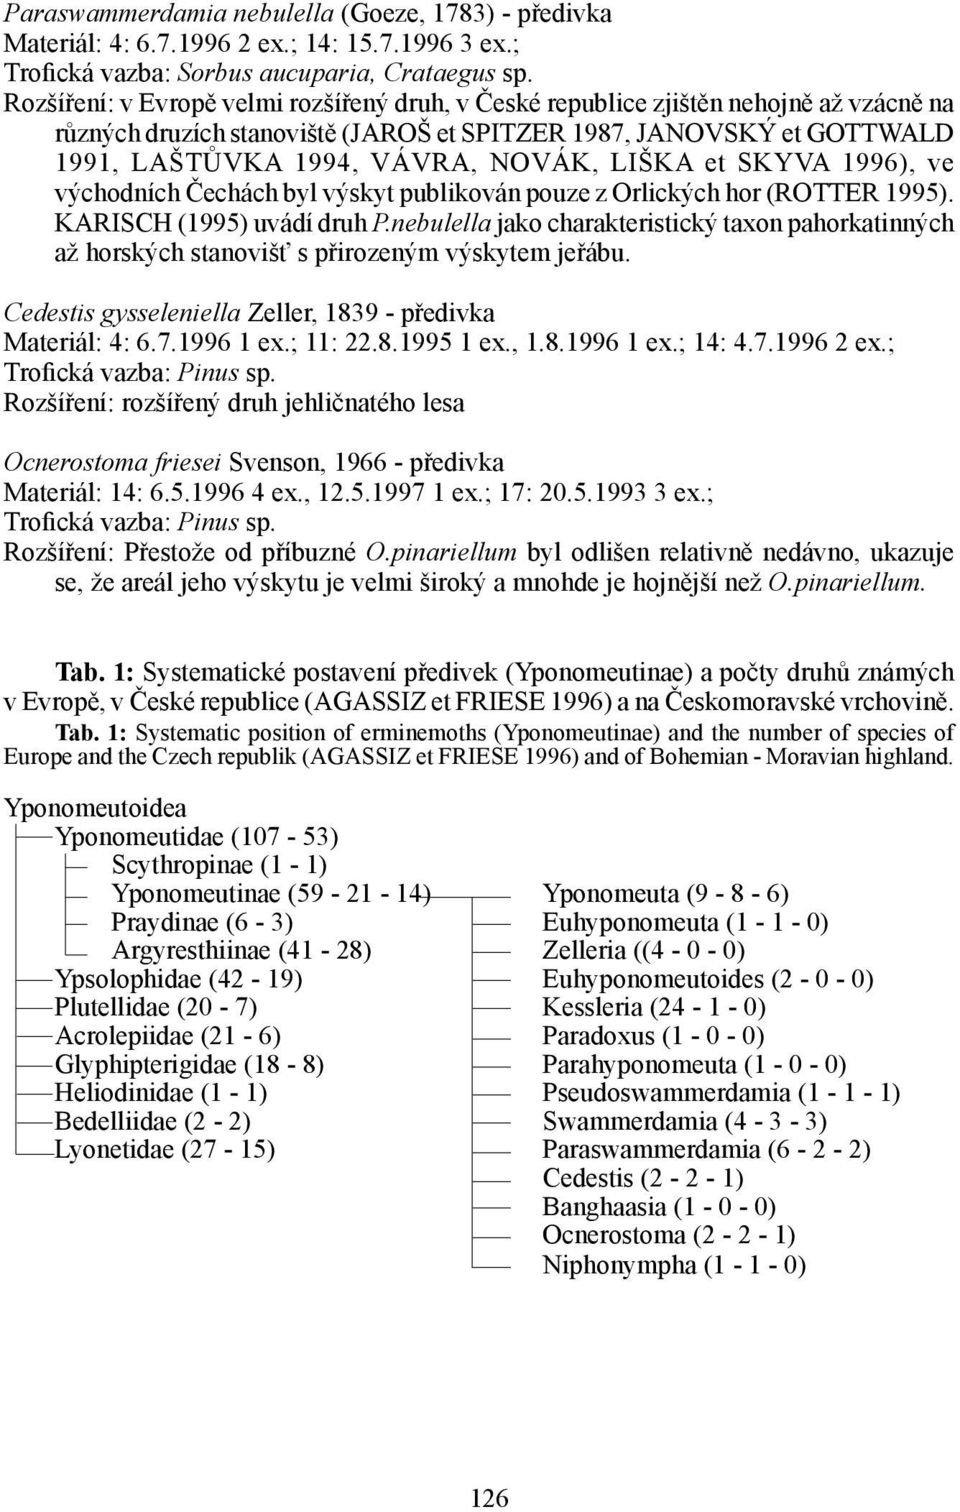 LIŠKA et SKYVA 1996), ve východních Čechách byl výskyt publikován pouze z Orlických hor (ROTTER 1995). KARISCH (1995) uvádí druh P.